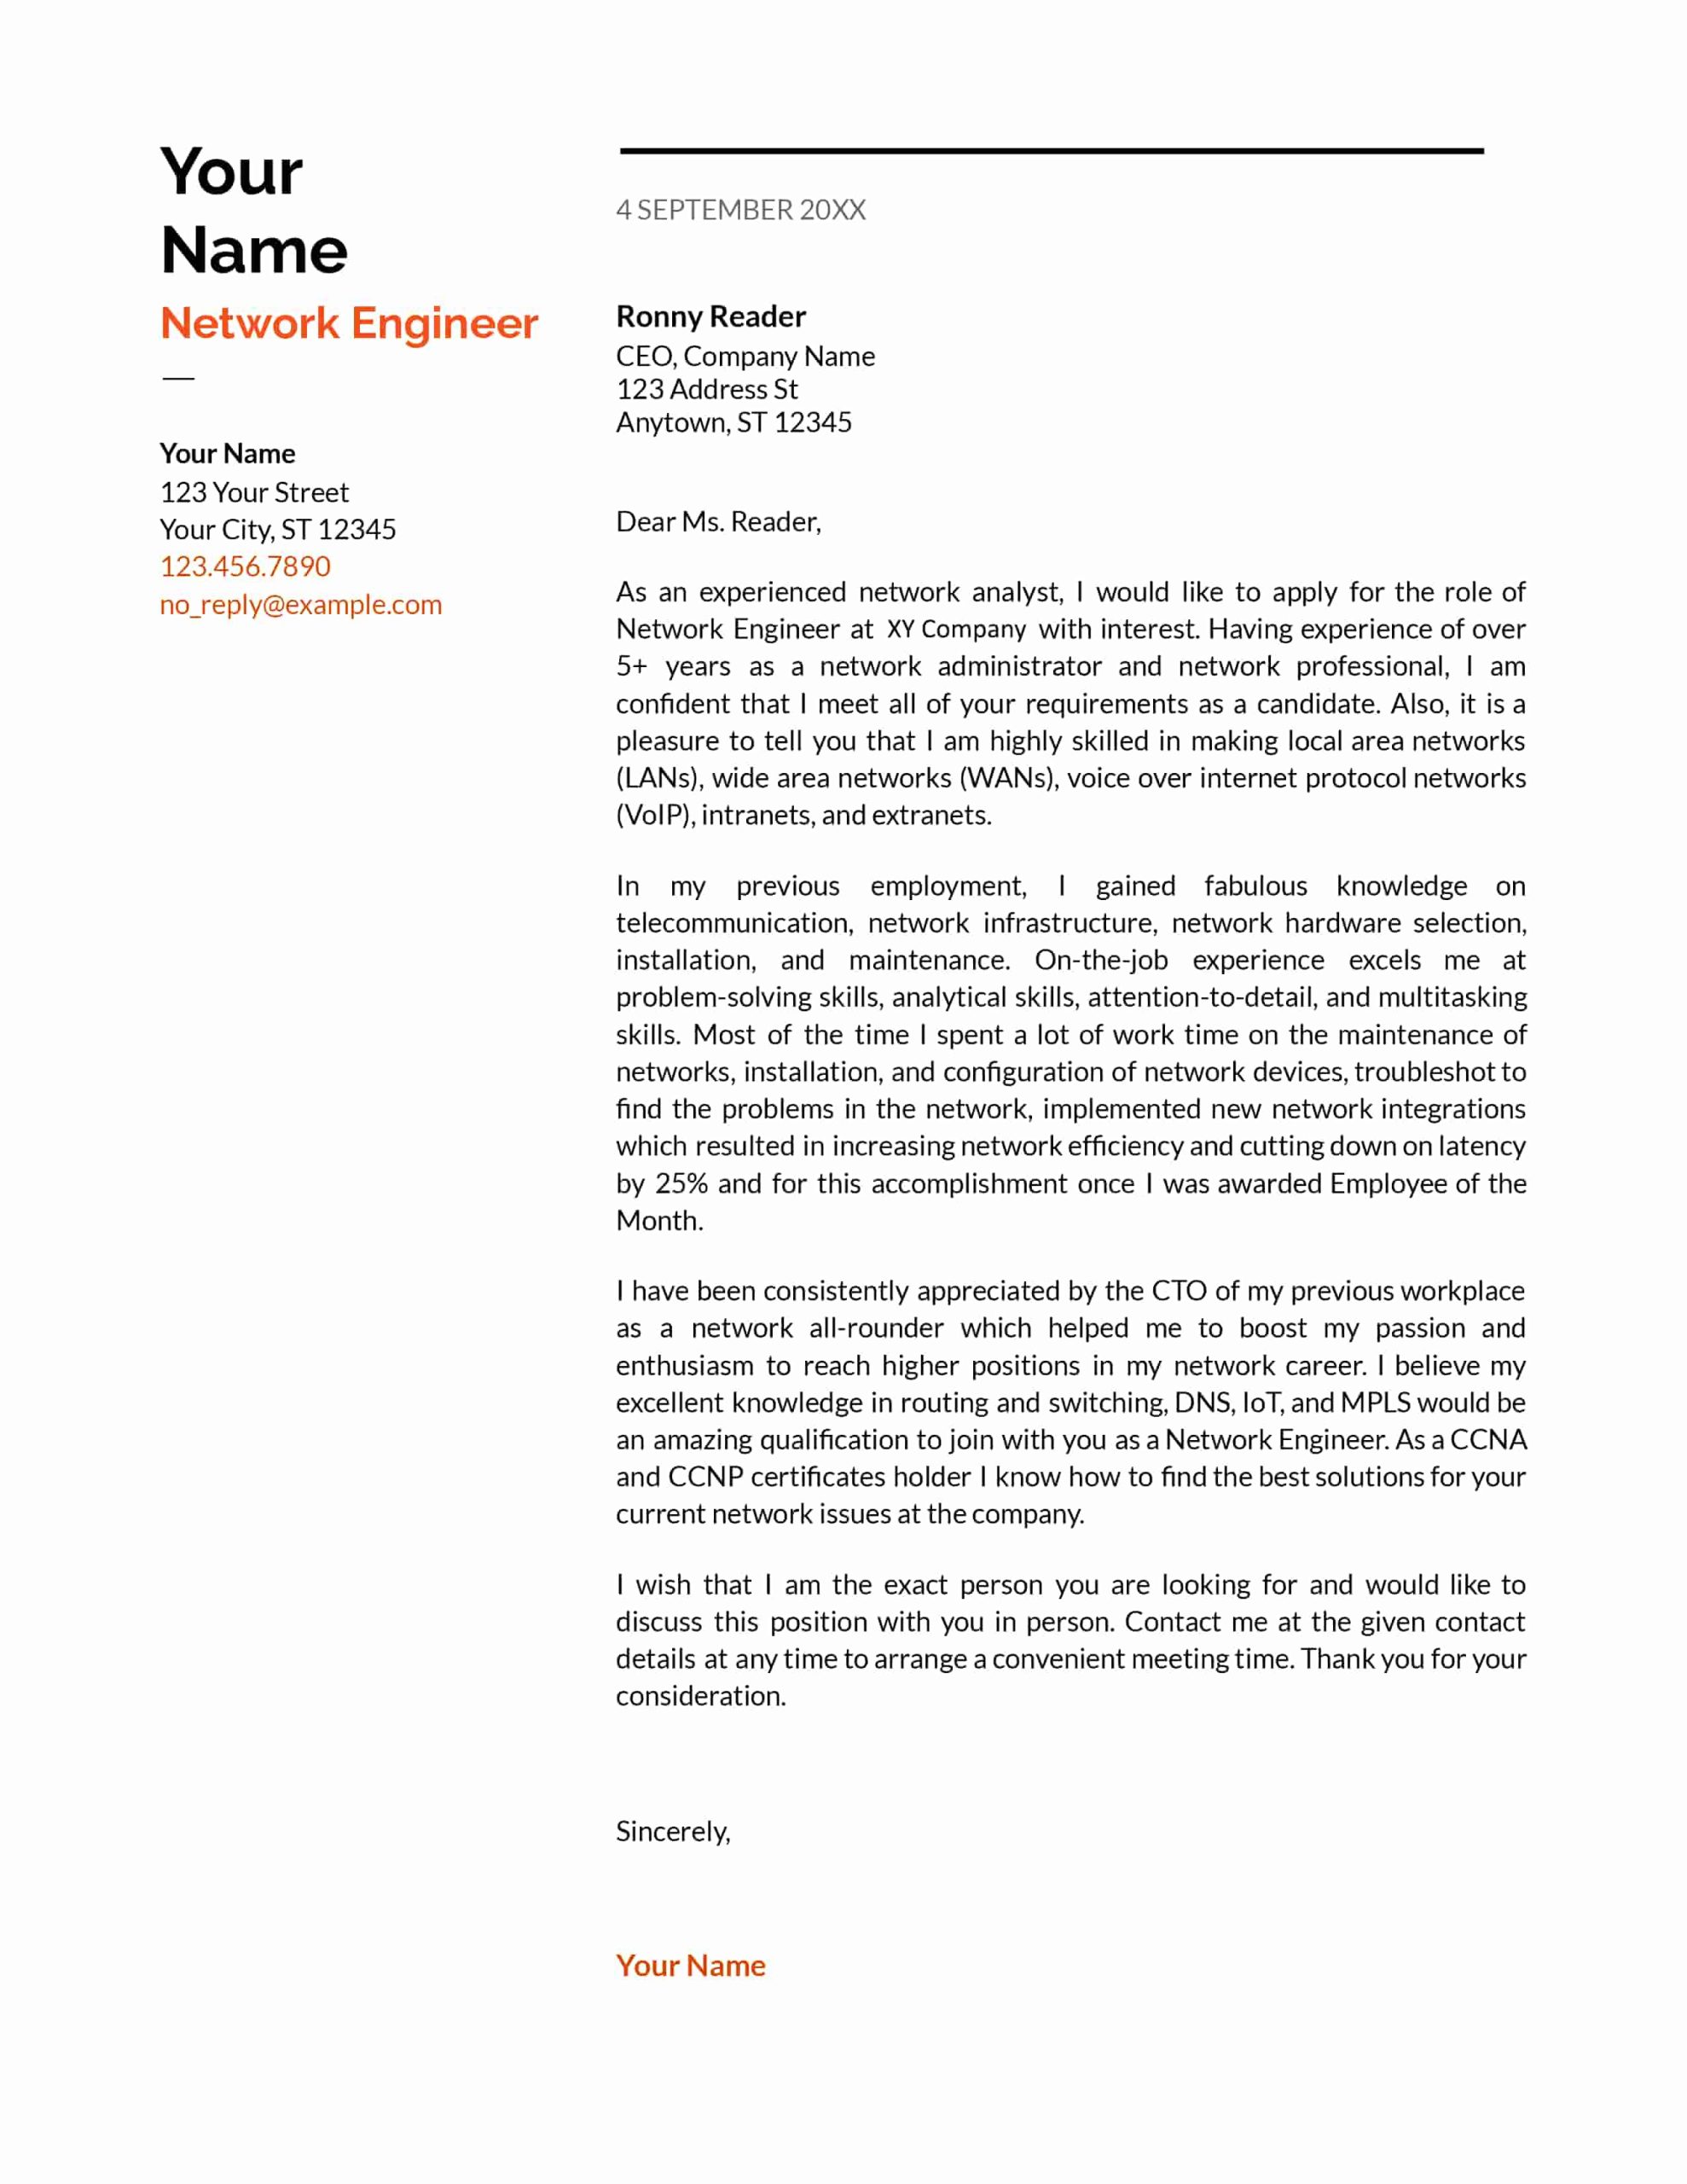 Network Engineer Cover Letter Resume Sample Network Engineer Cover Letter Samples & Guides Cresuma